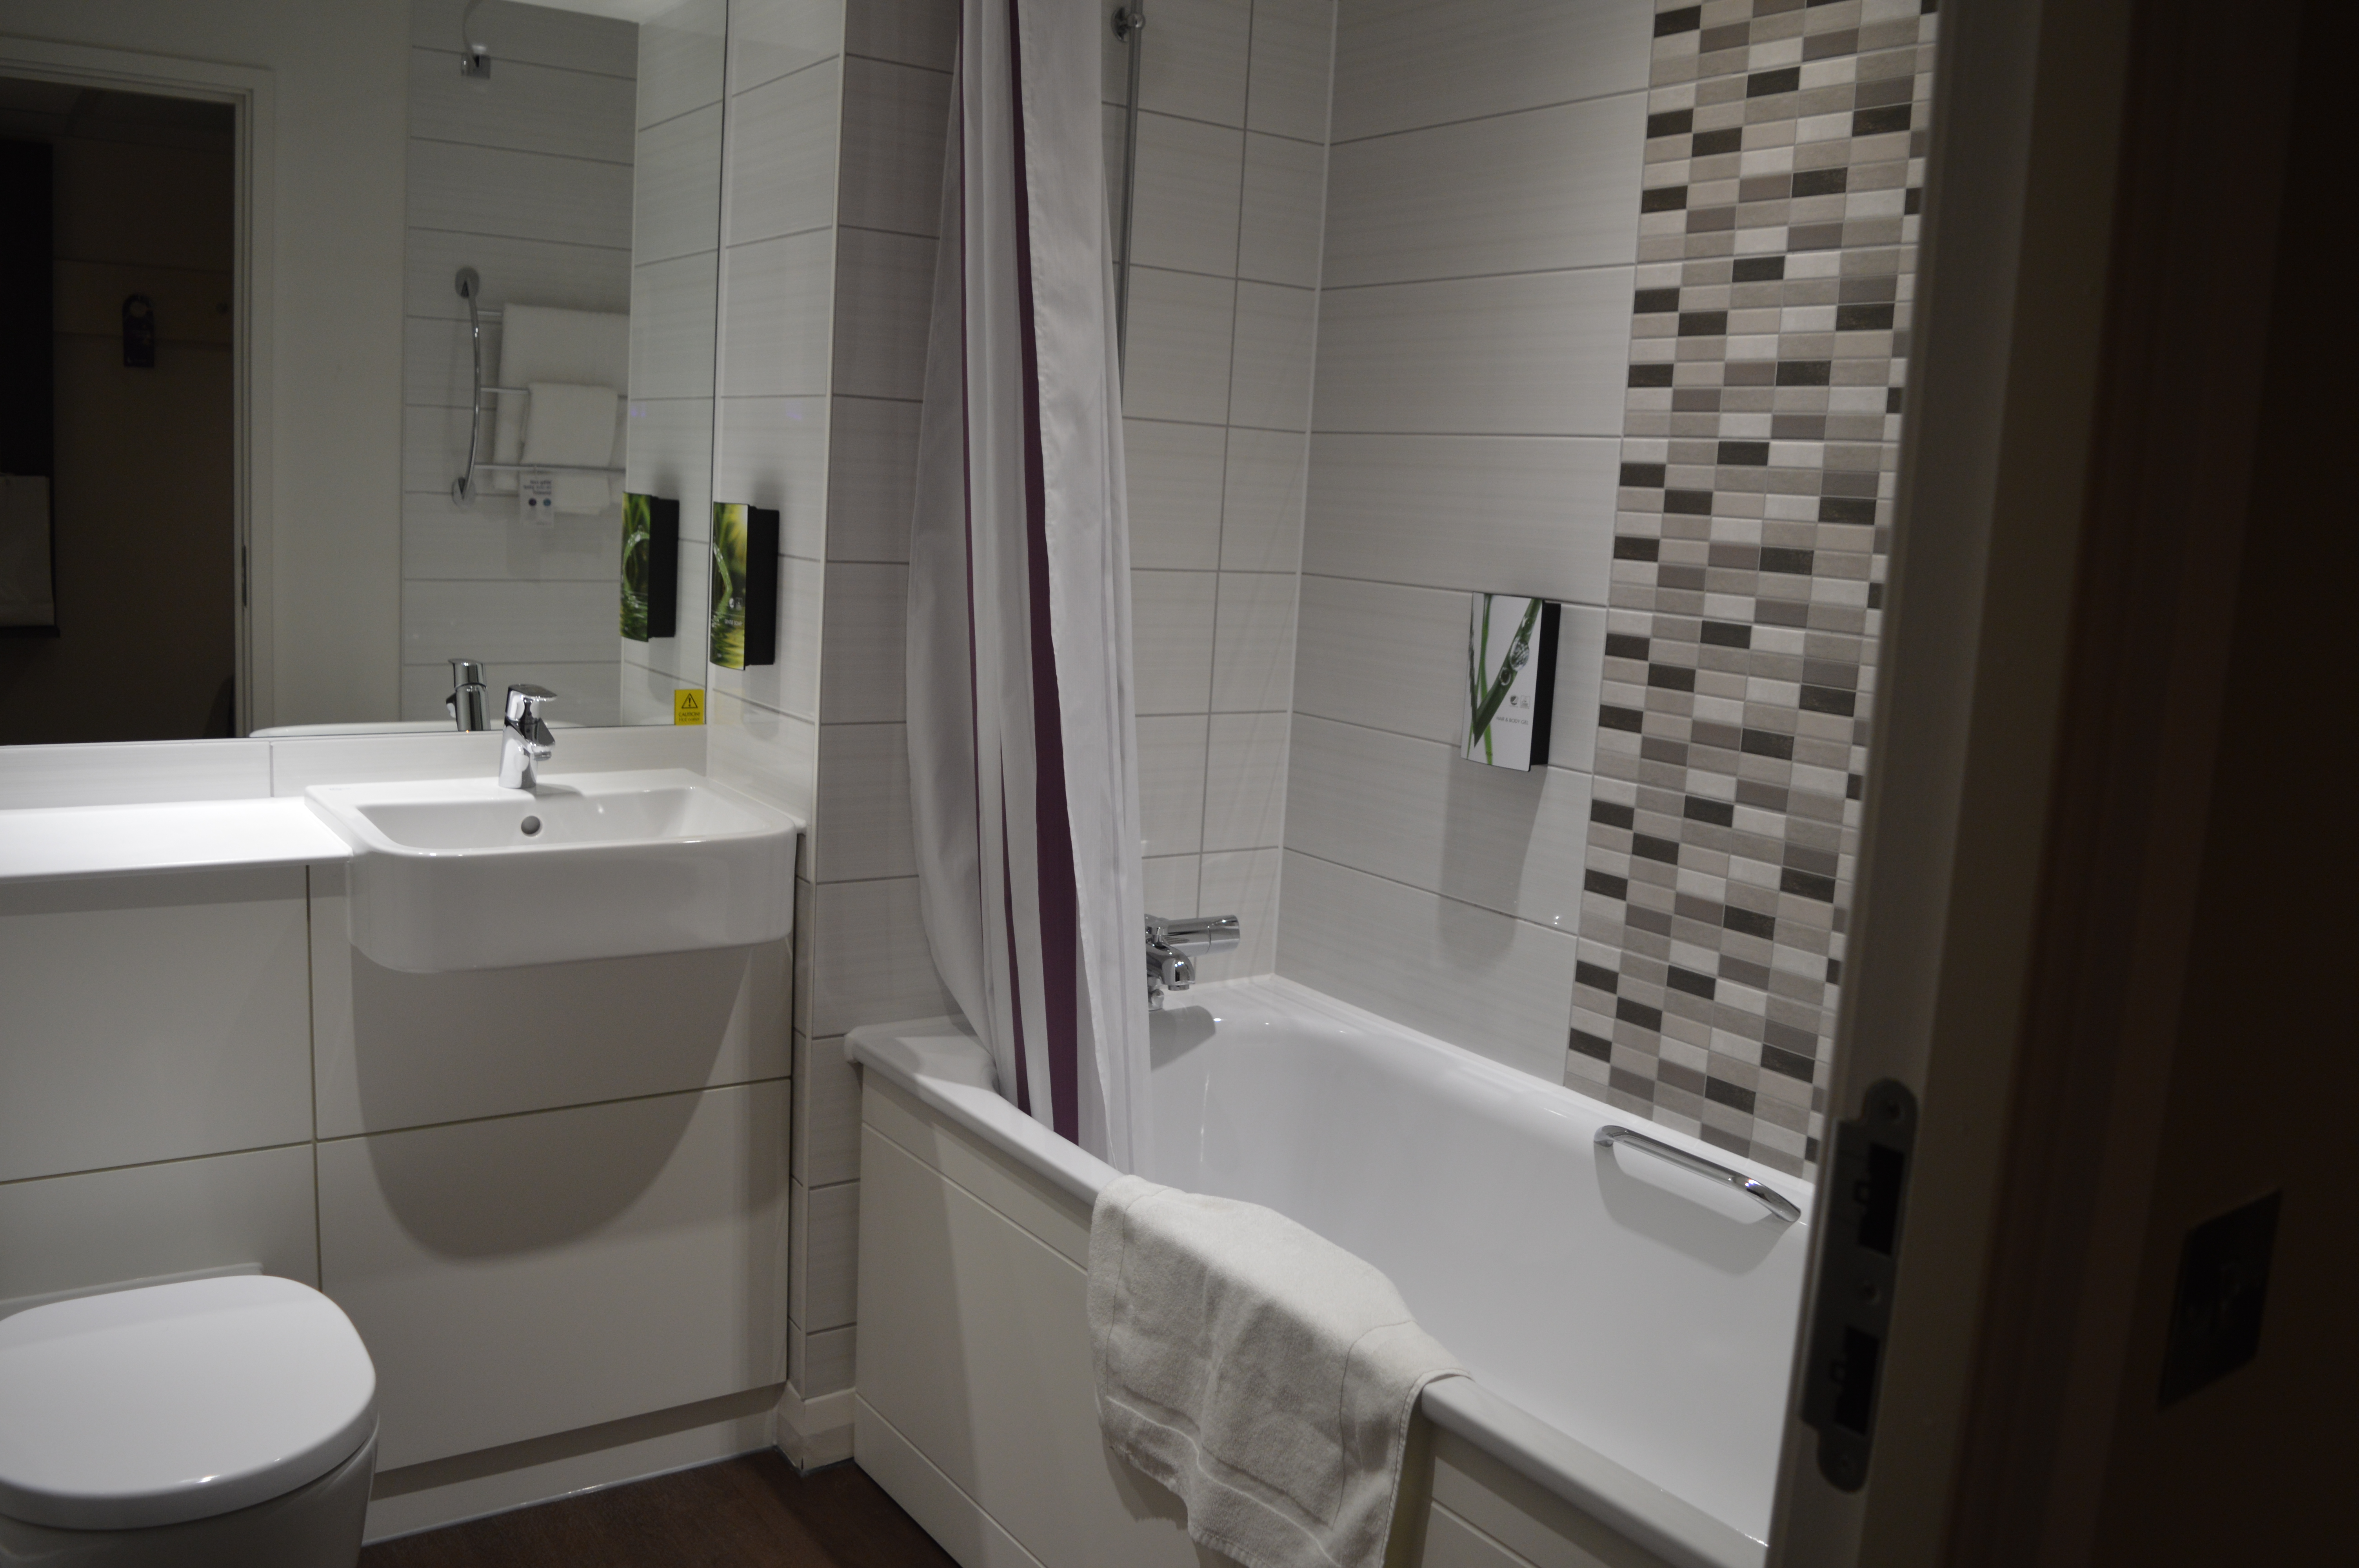 Archway Premier Inn Bathroom